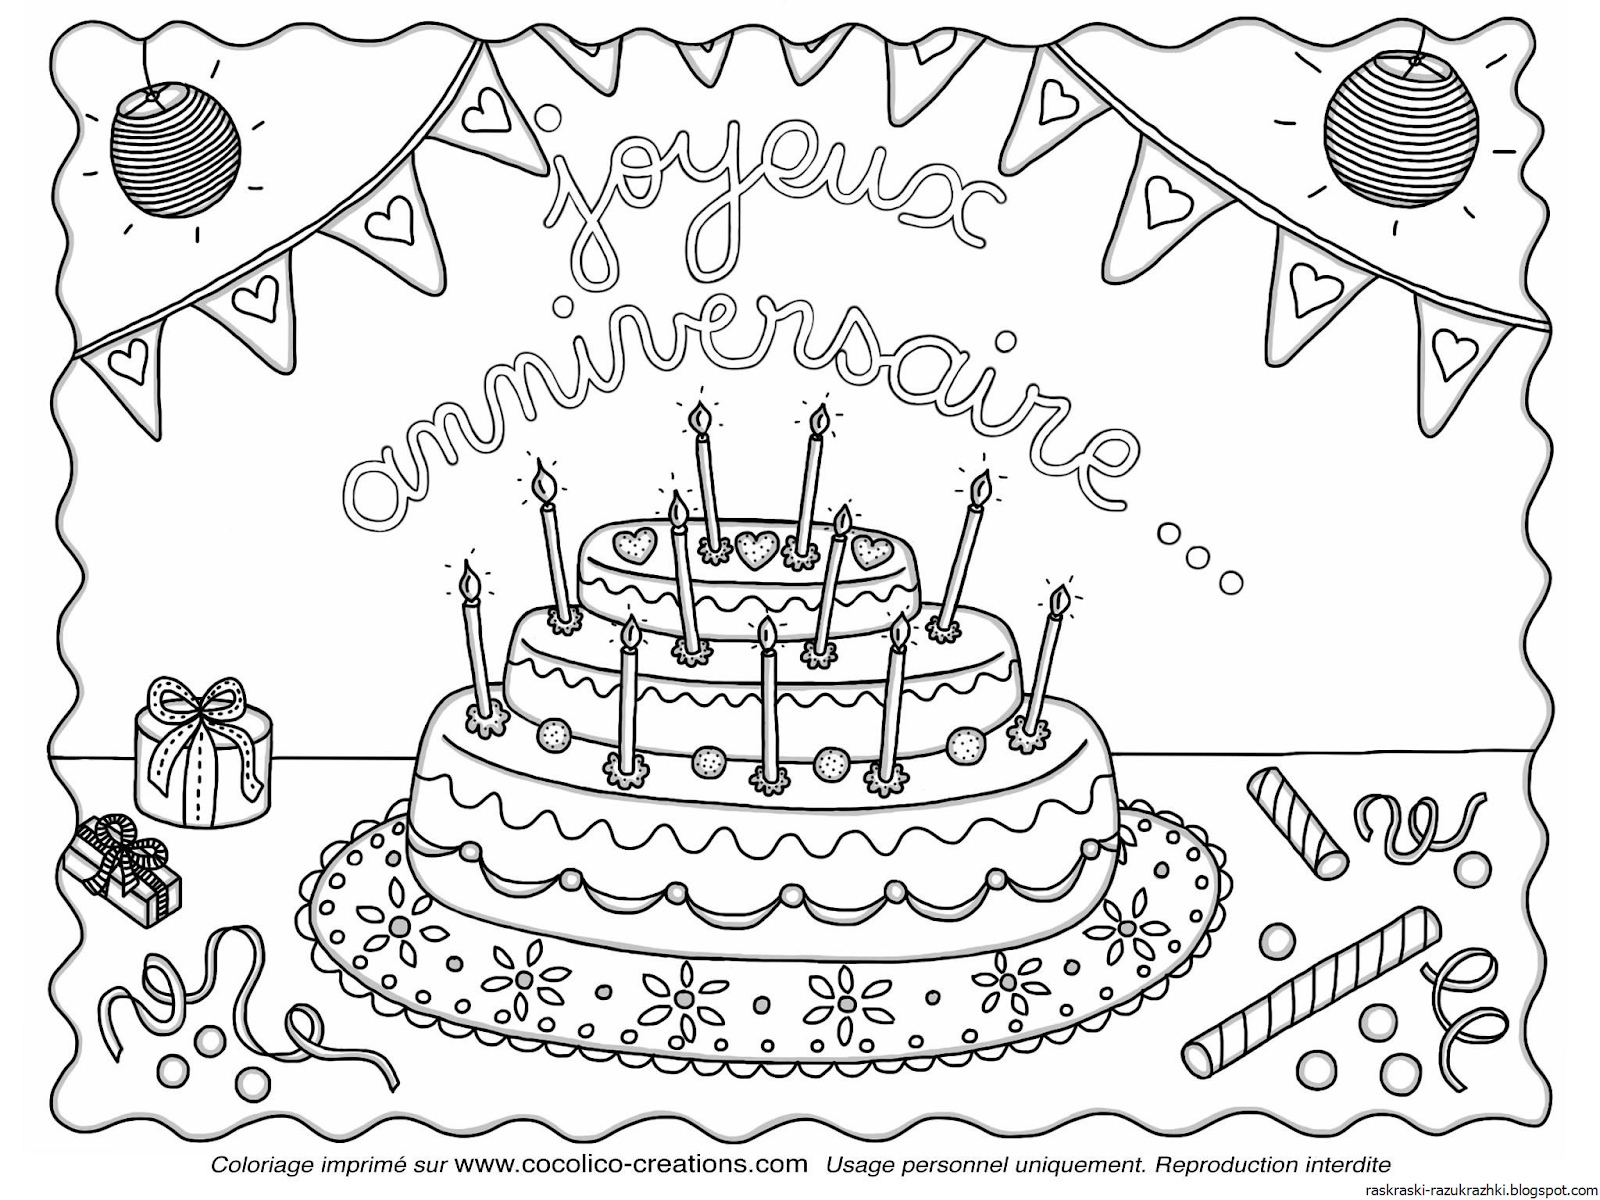 Какие рисунки можно нарисовать на день рождения. Рисунок на день рождения. Раскраска "с днем рождения!". Рисунки для раскрашивания с днем рождения. Рисунок на день рождения легкий.